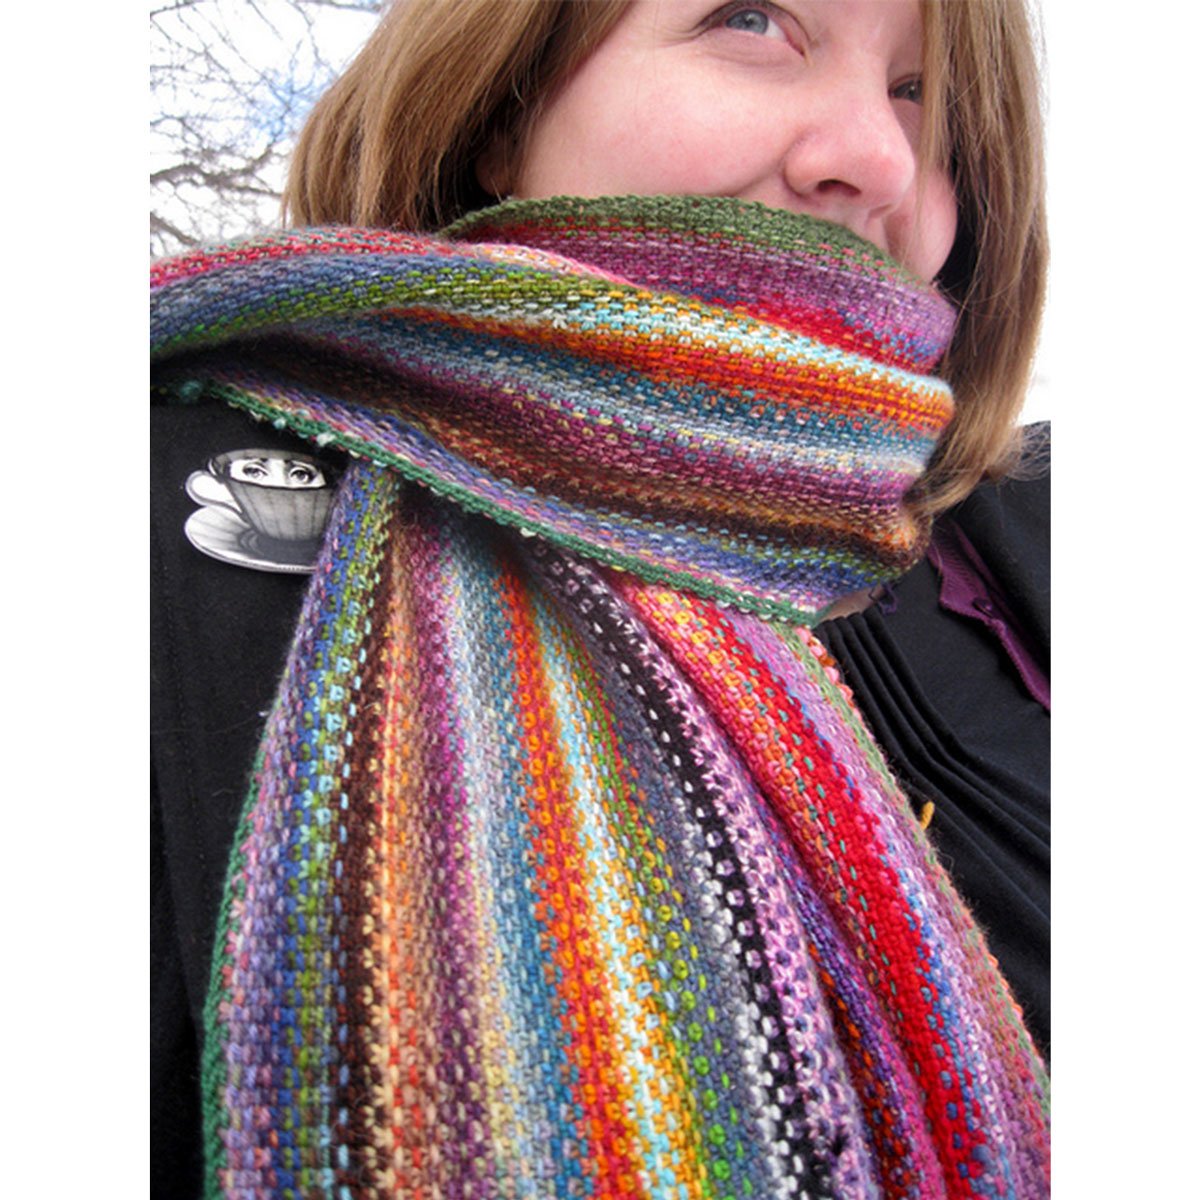 Цветной шарф. Разноцветный шарф. Разноцветный вязаный шарф. Разноцветный шарф спицами. Необычные вязаные шарфы.